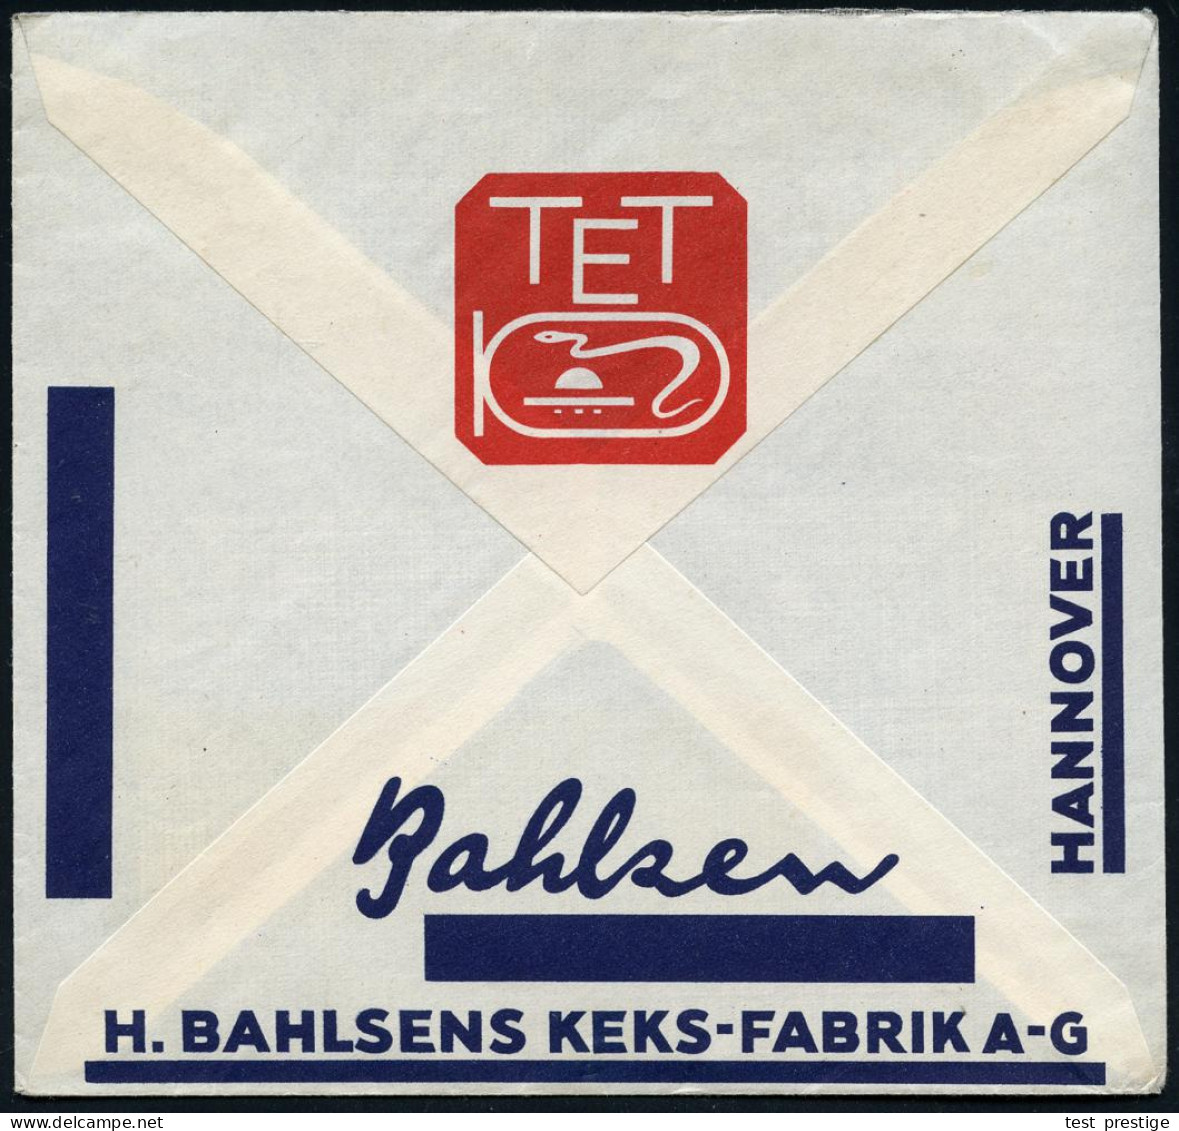 HANNOVER/ 1/ BAHLSEN-KEKS 1934 (7.2.) AFS Francotyp "Bogenrechteck" Auf Reklame-Bf.: TET, LEIBNIZ-KEKS = Alt-ägyptische  - Egyptology